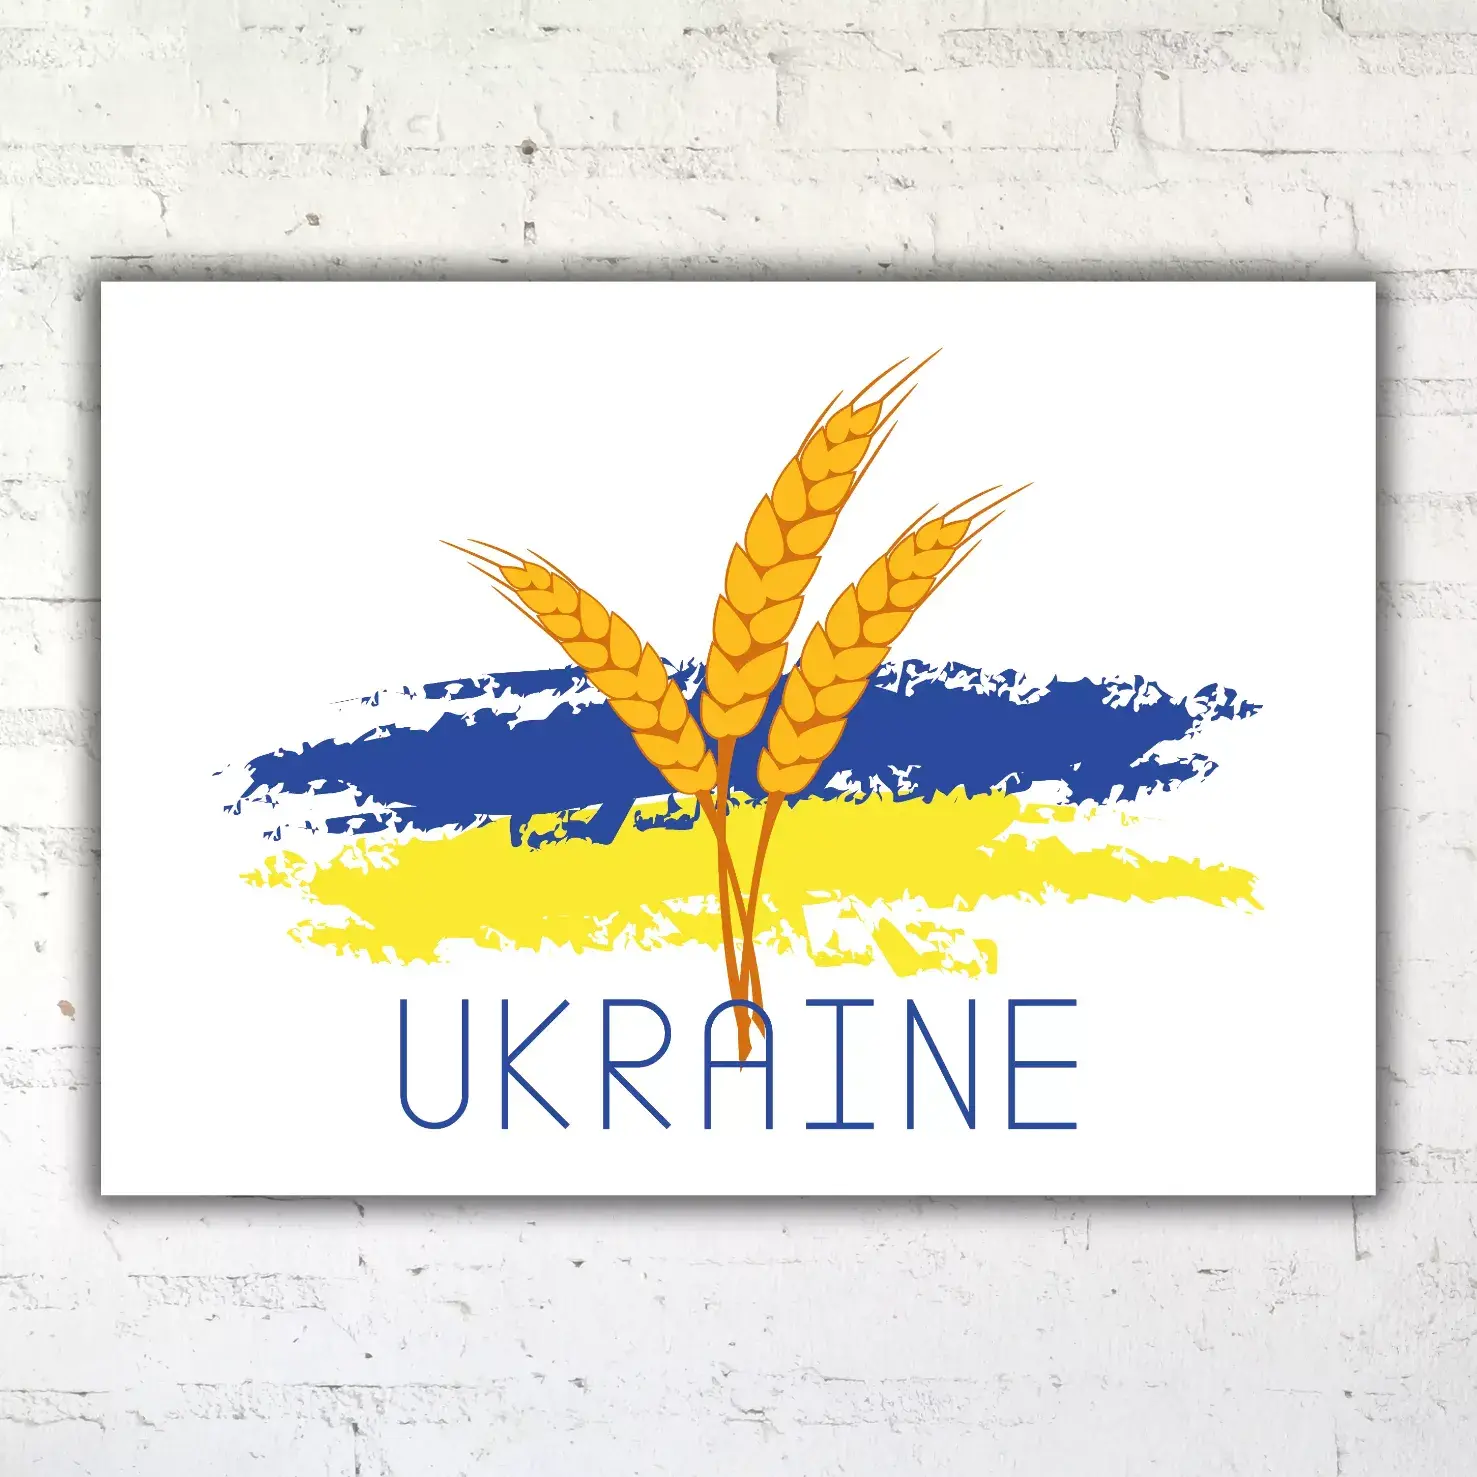 Україна - пшениця